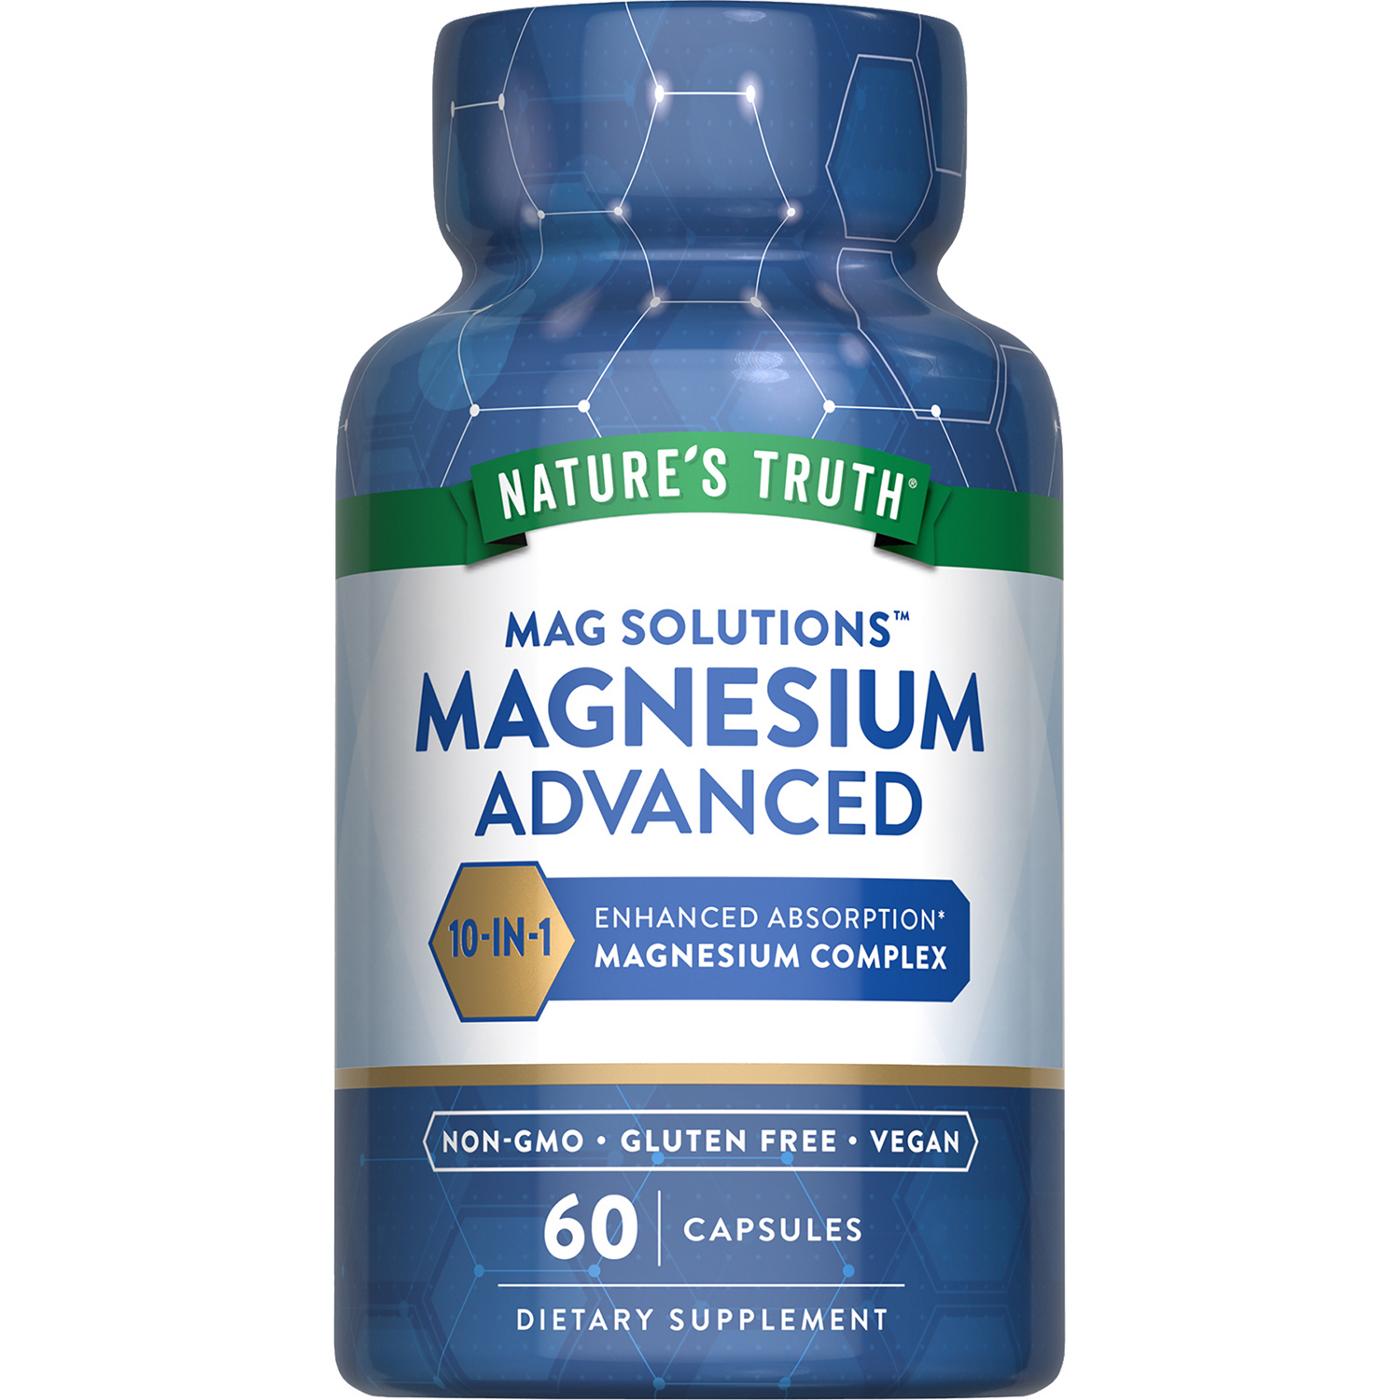 Nature's Truth Magnesium Advanced Capsules; image 1 of 5